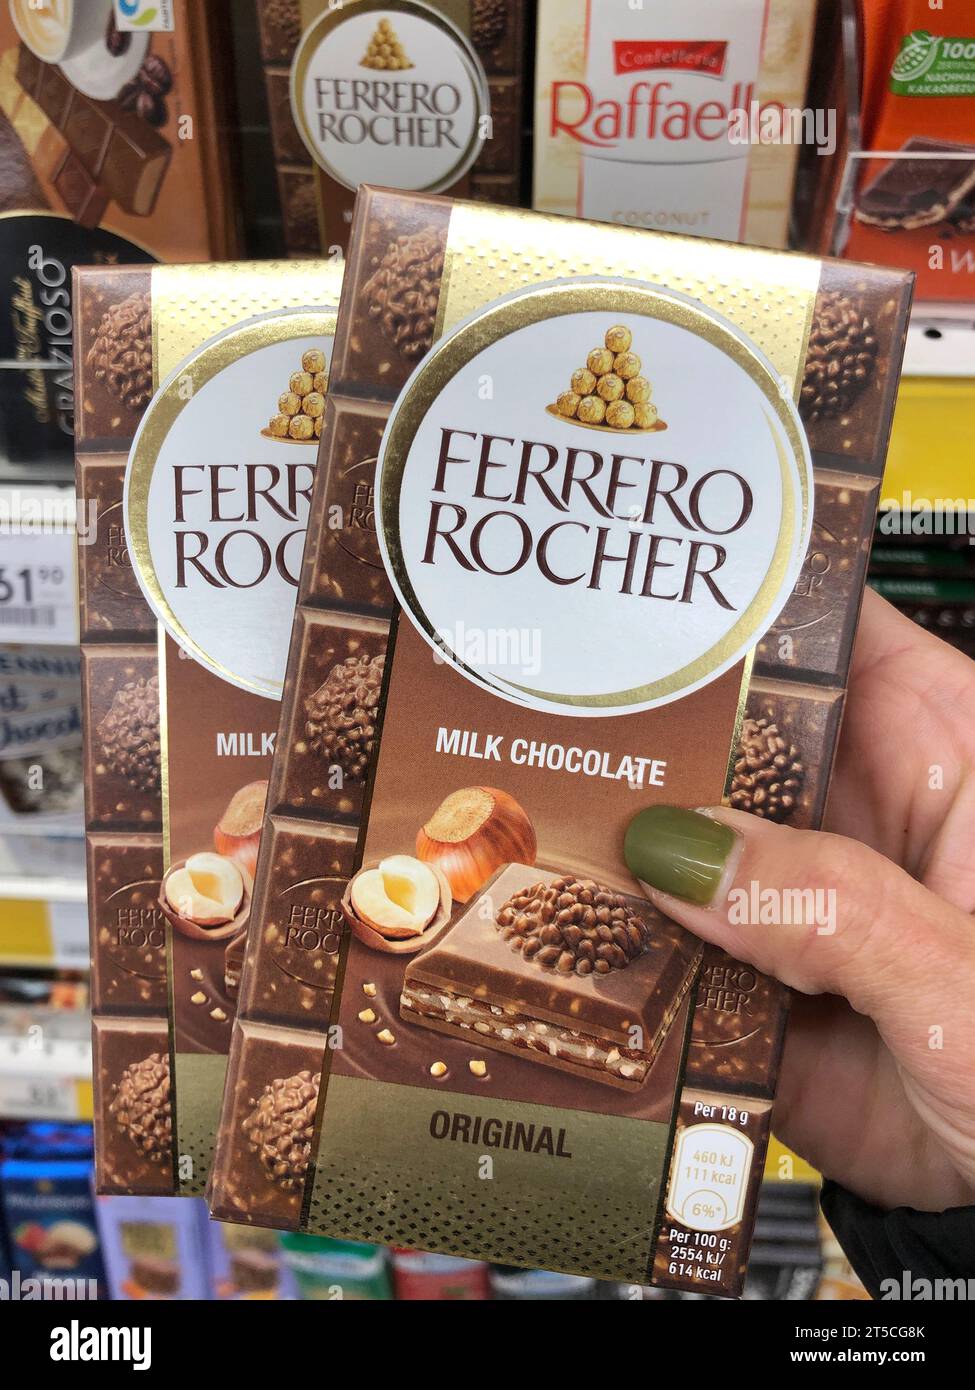 Ferrero Rocher Chocolate Bars Are Launching In The UK